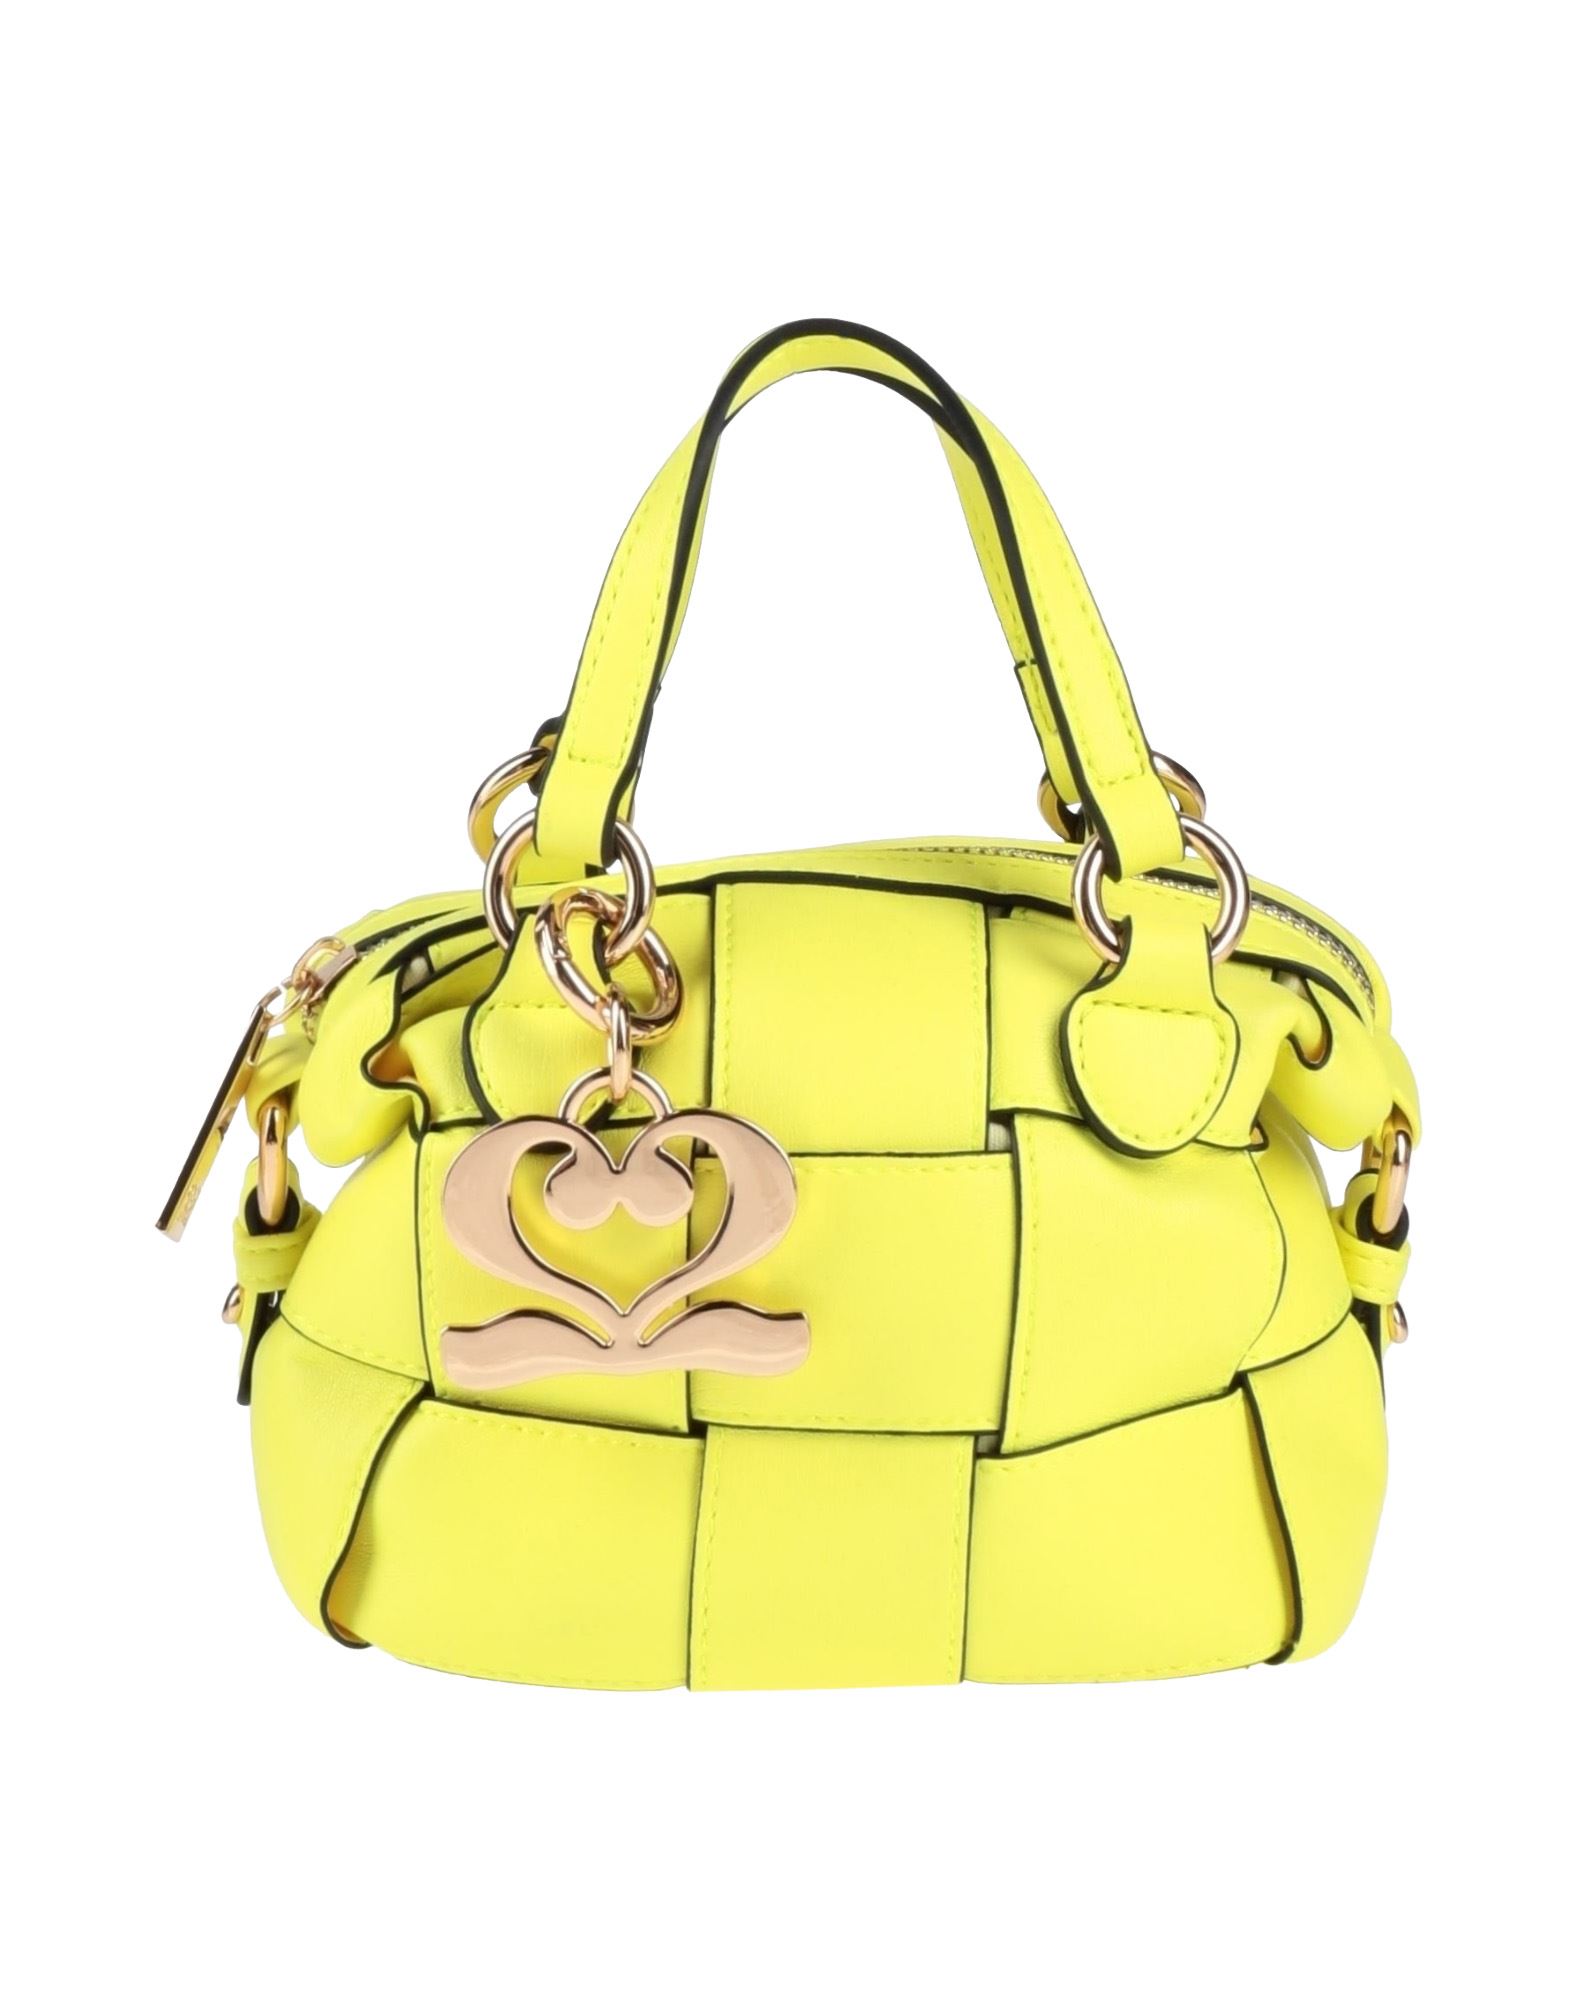 Numeroventidue Handbags In Yellow